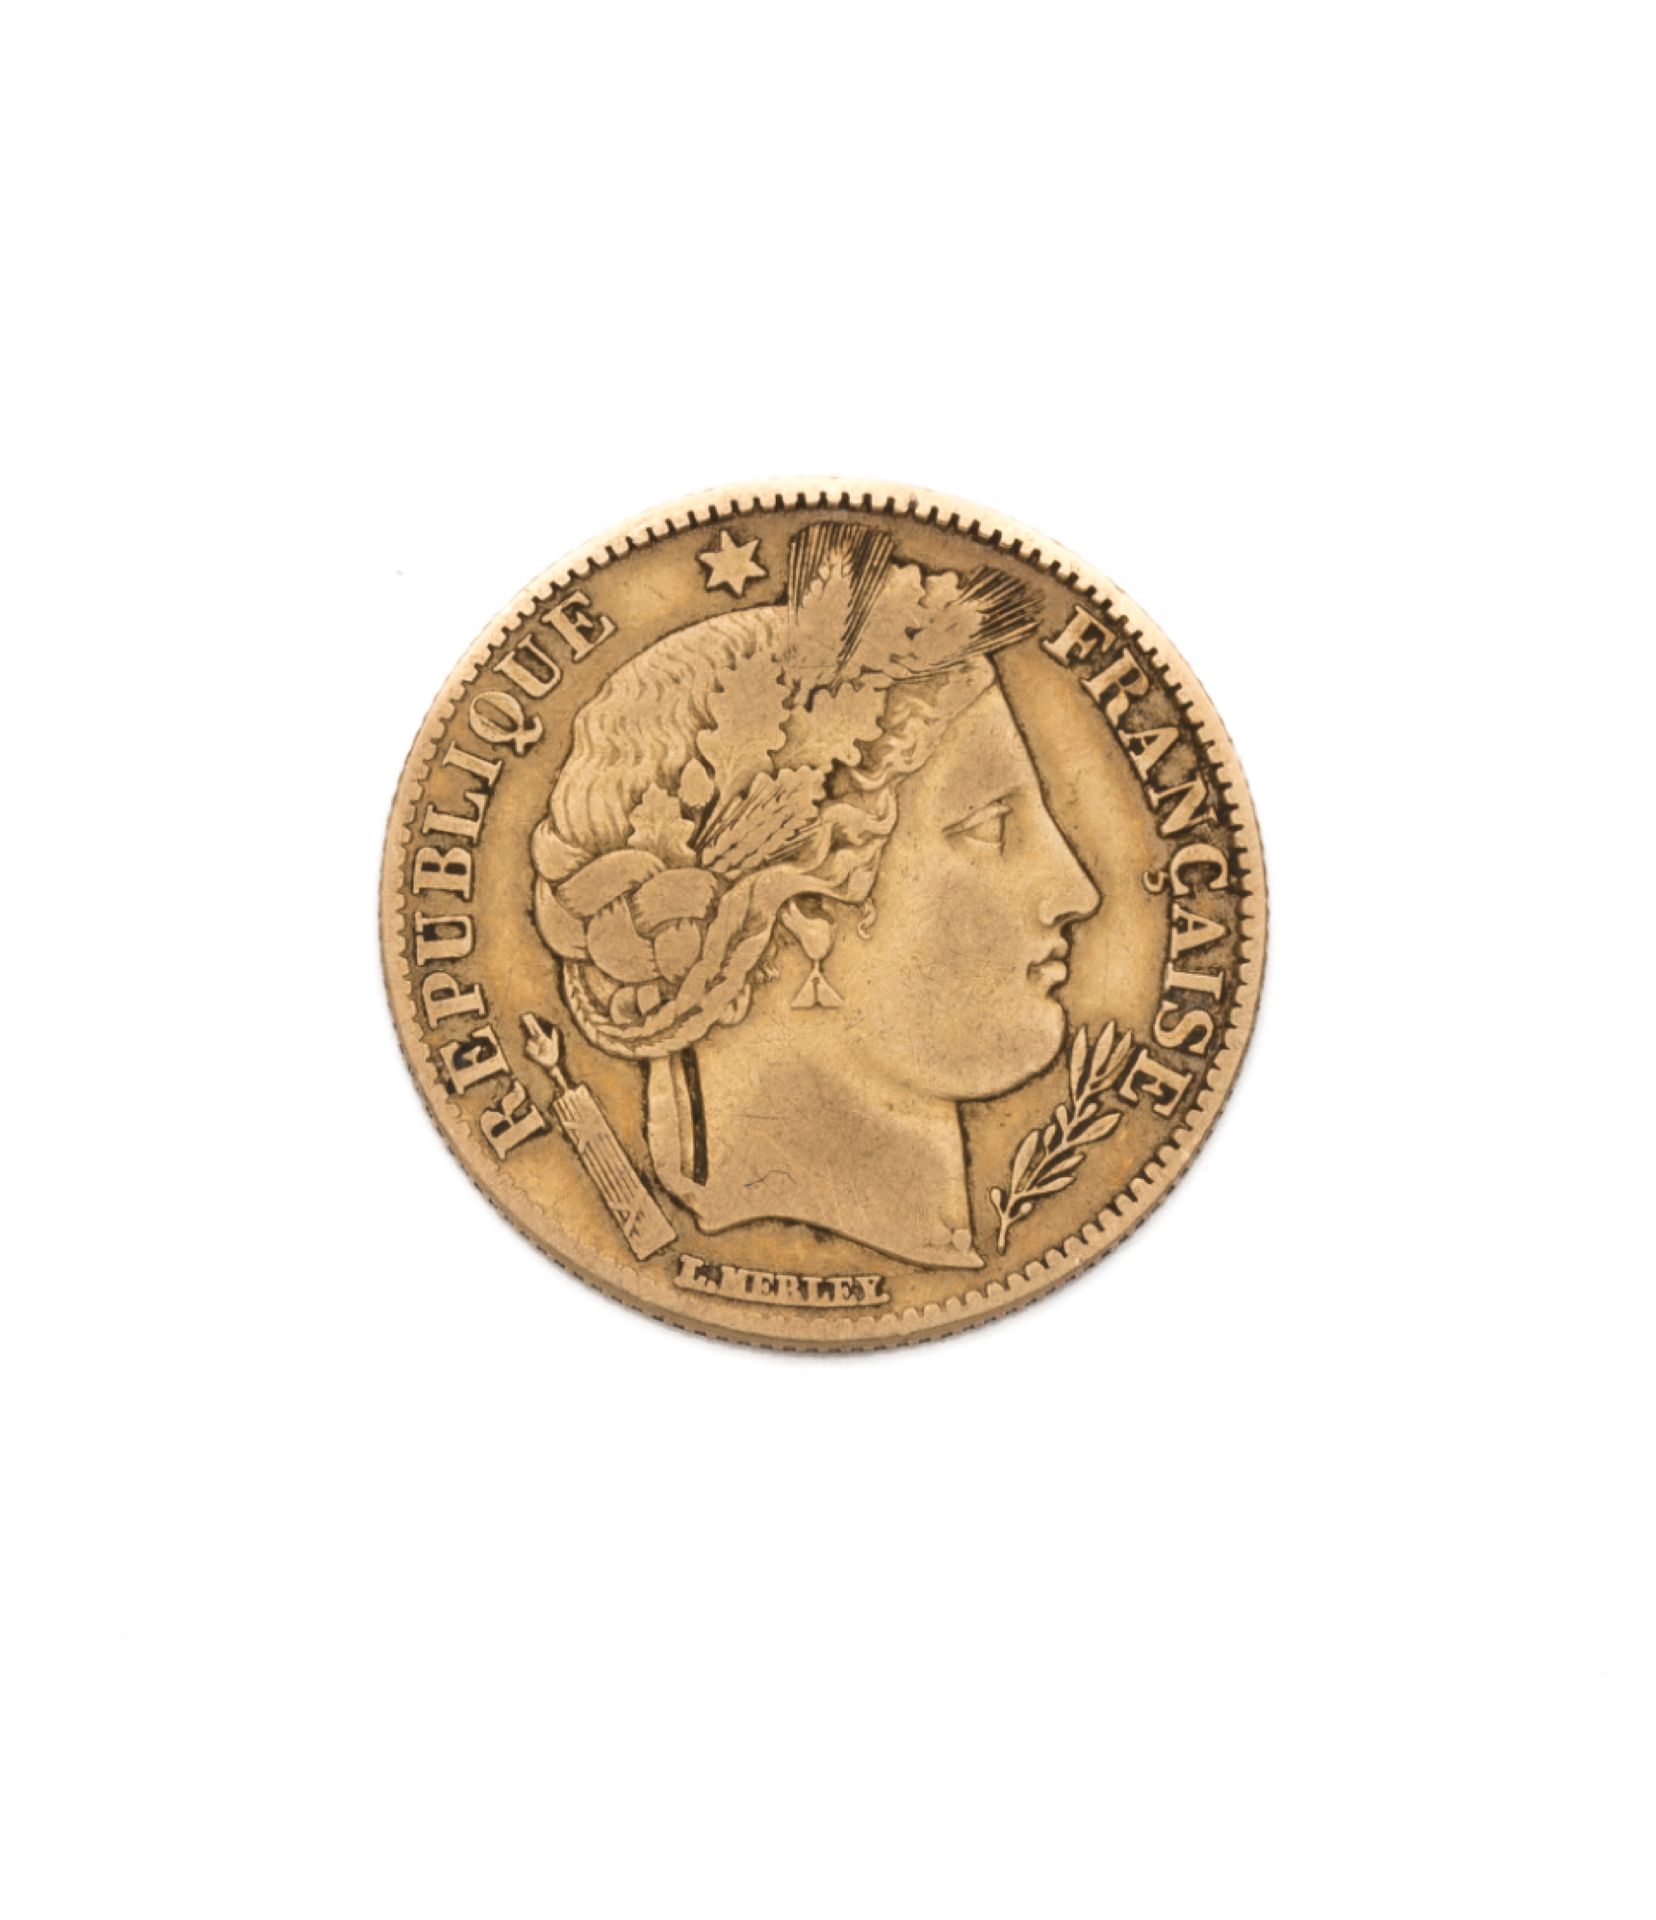 Null Segunda República
10 francos de oro, Ceres. 1851 A
Peso : 3,15 g